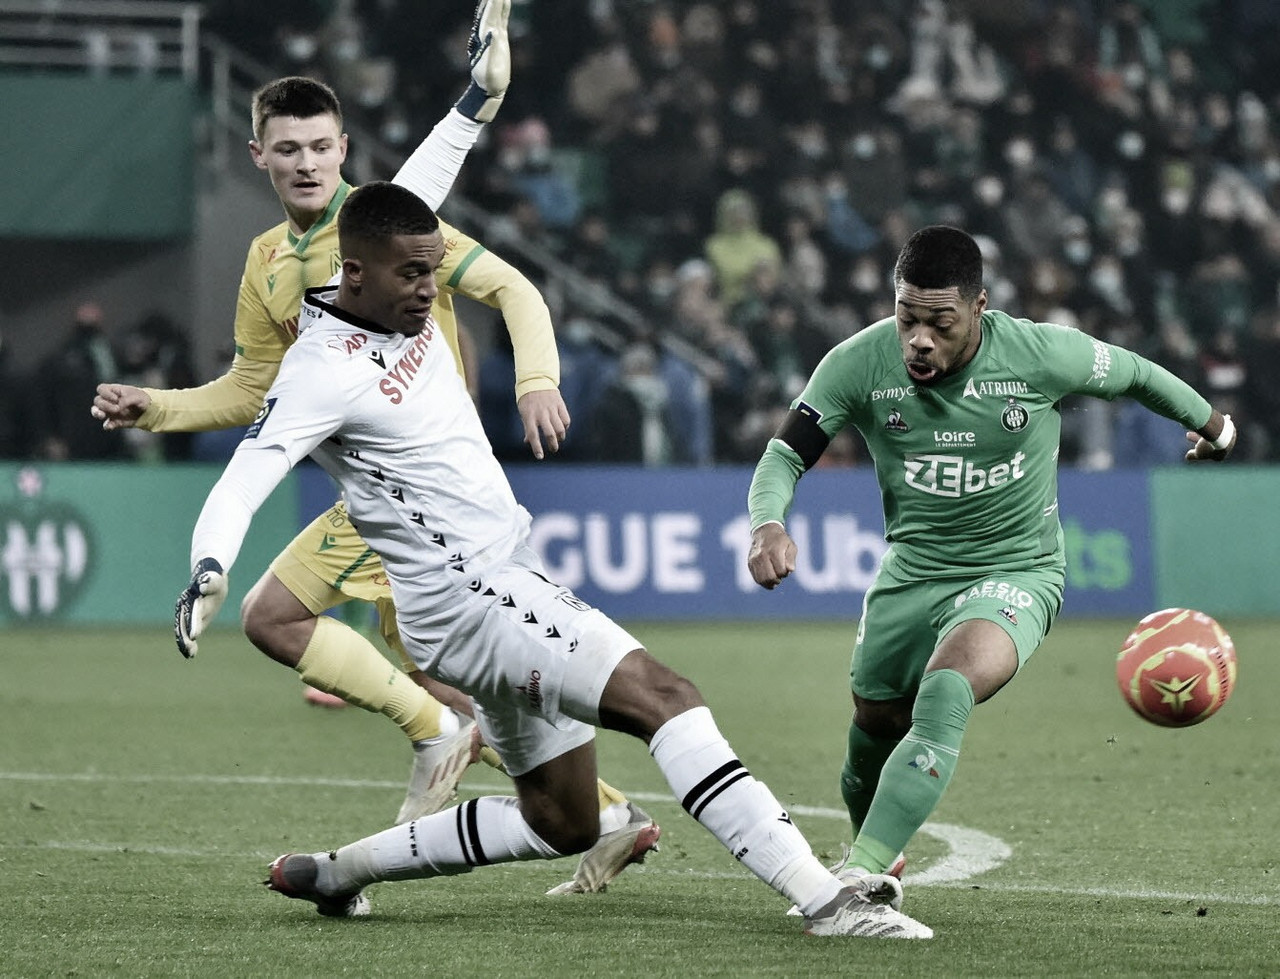 Via-crúcis do Saint-Étienne: derrotado pelo Nantes e isolado no último lugar da Ligue 1